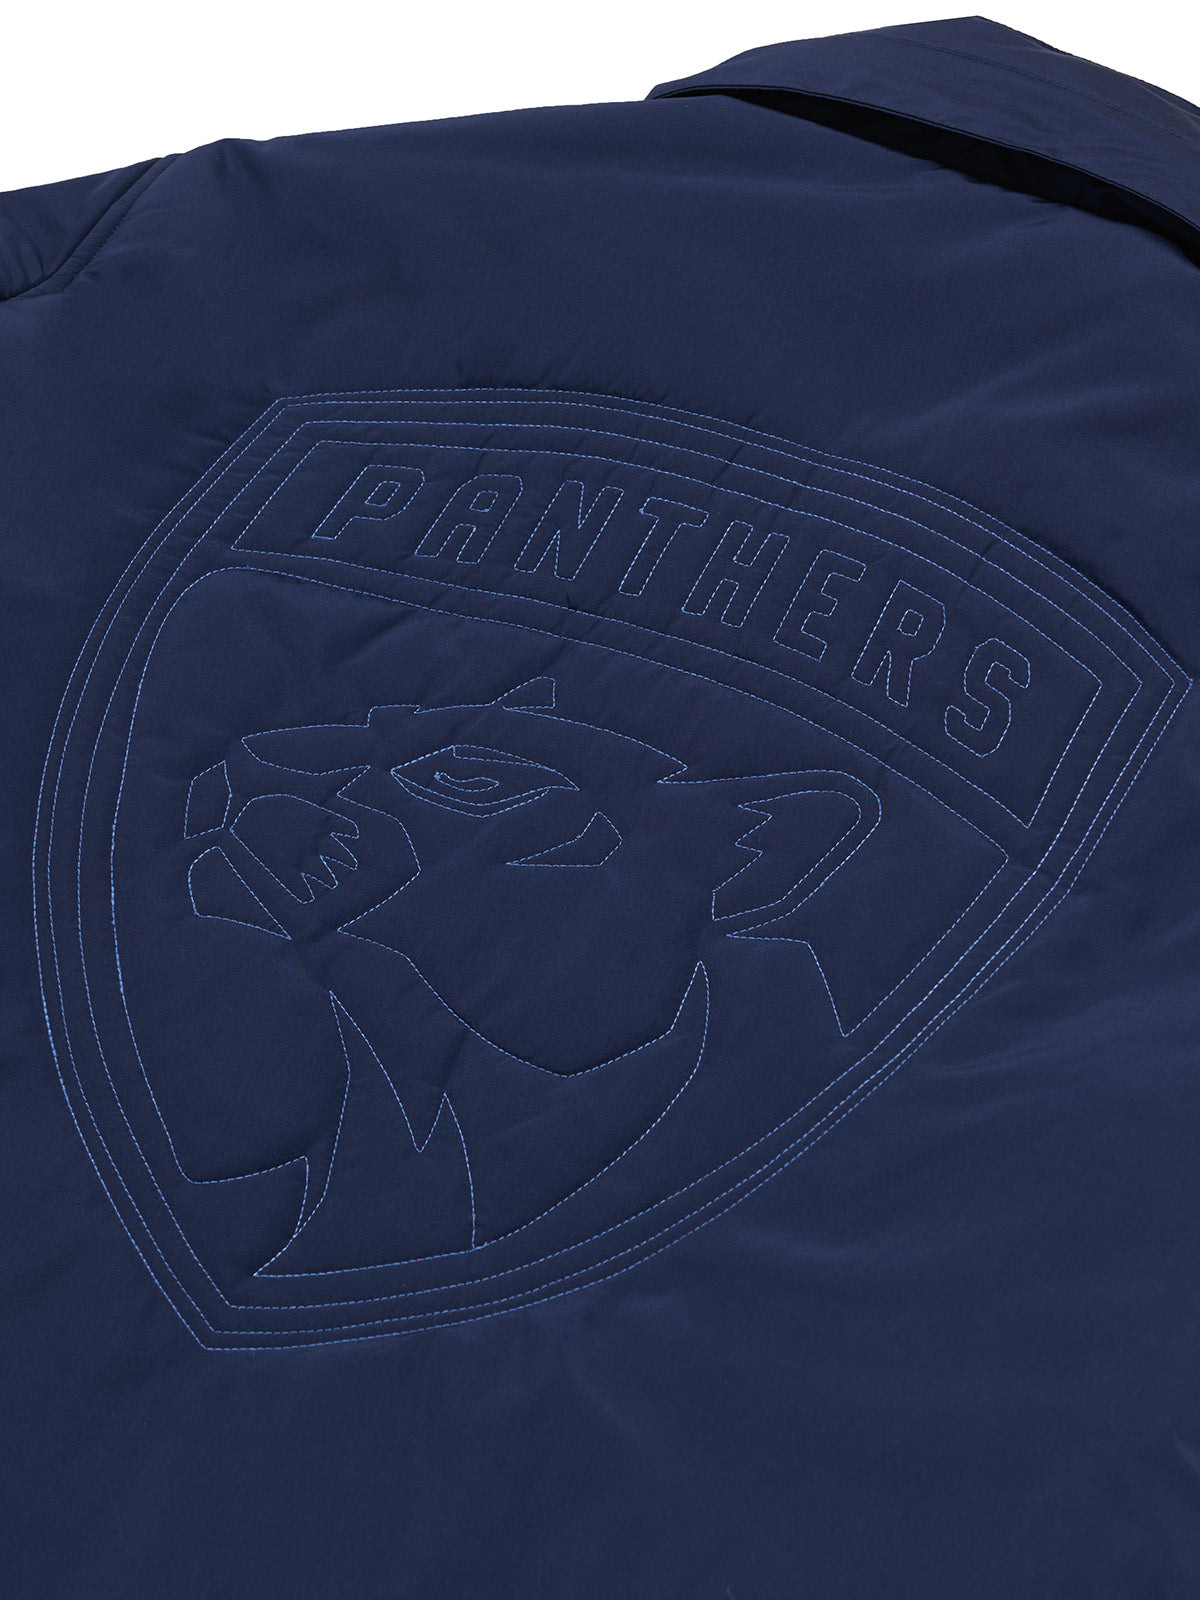 Florida Panthers Coach's Jacket